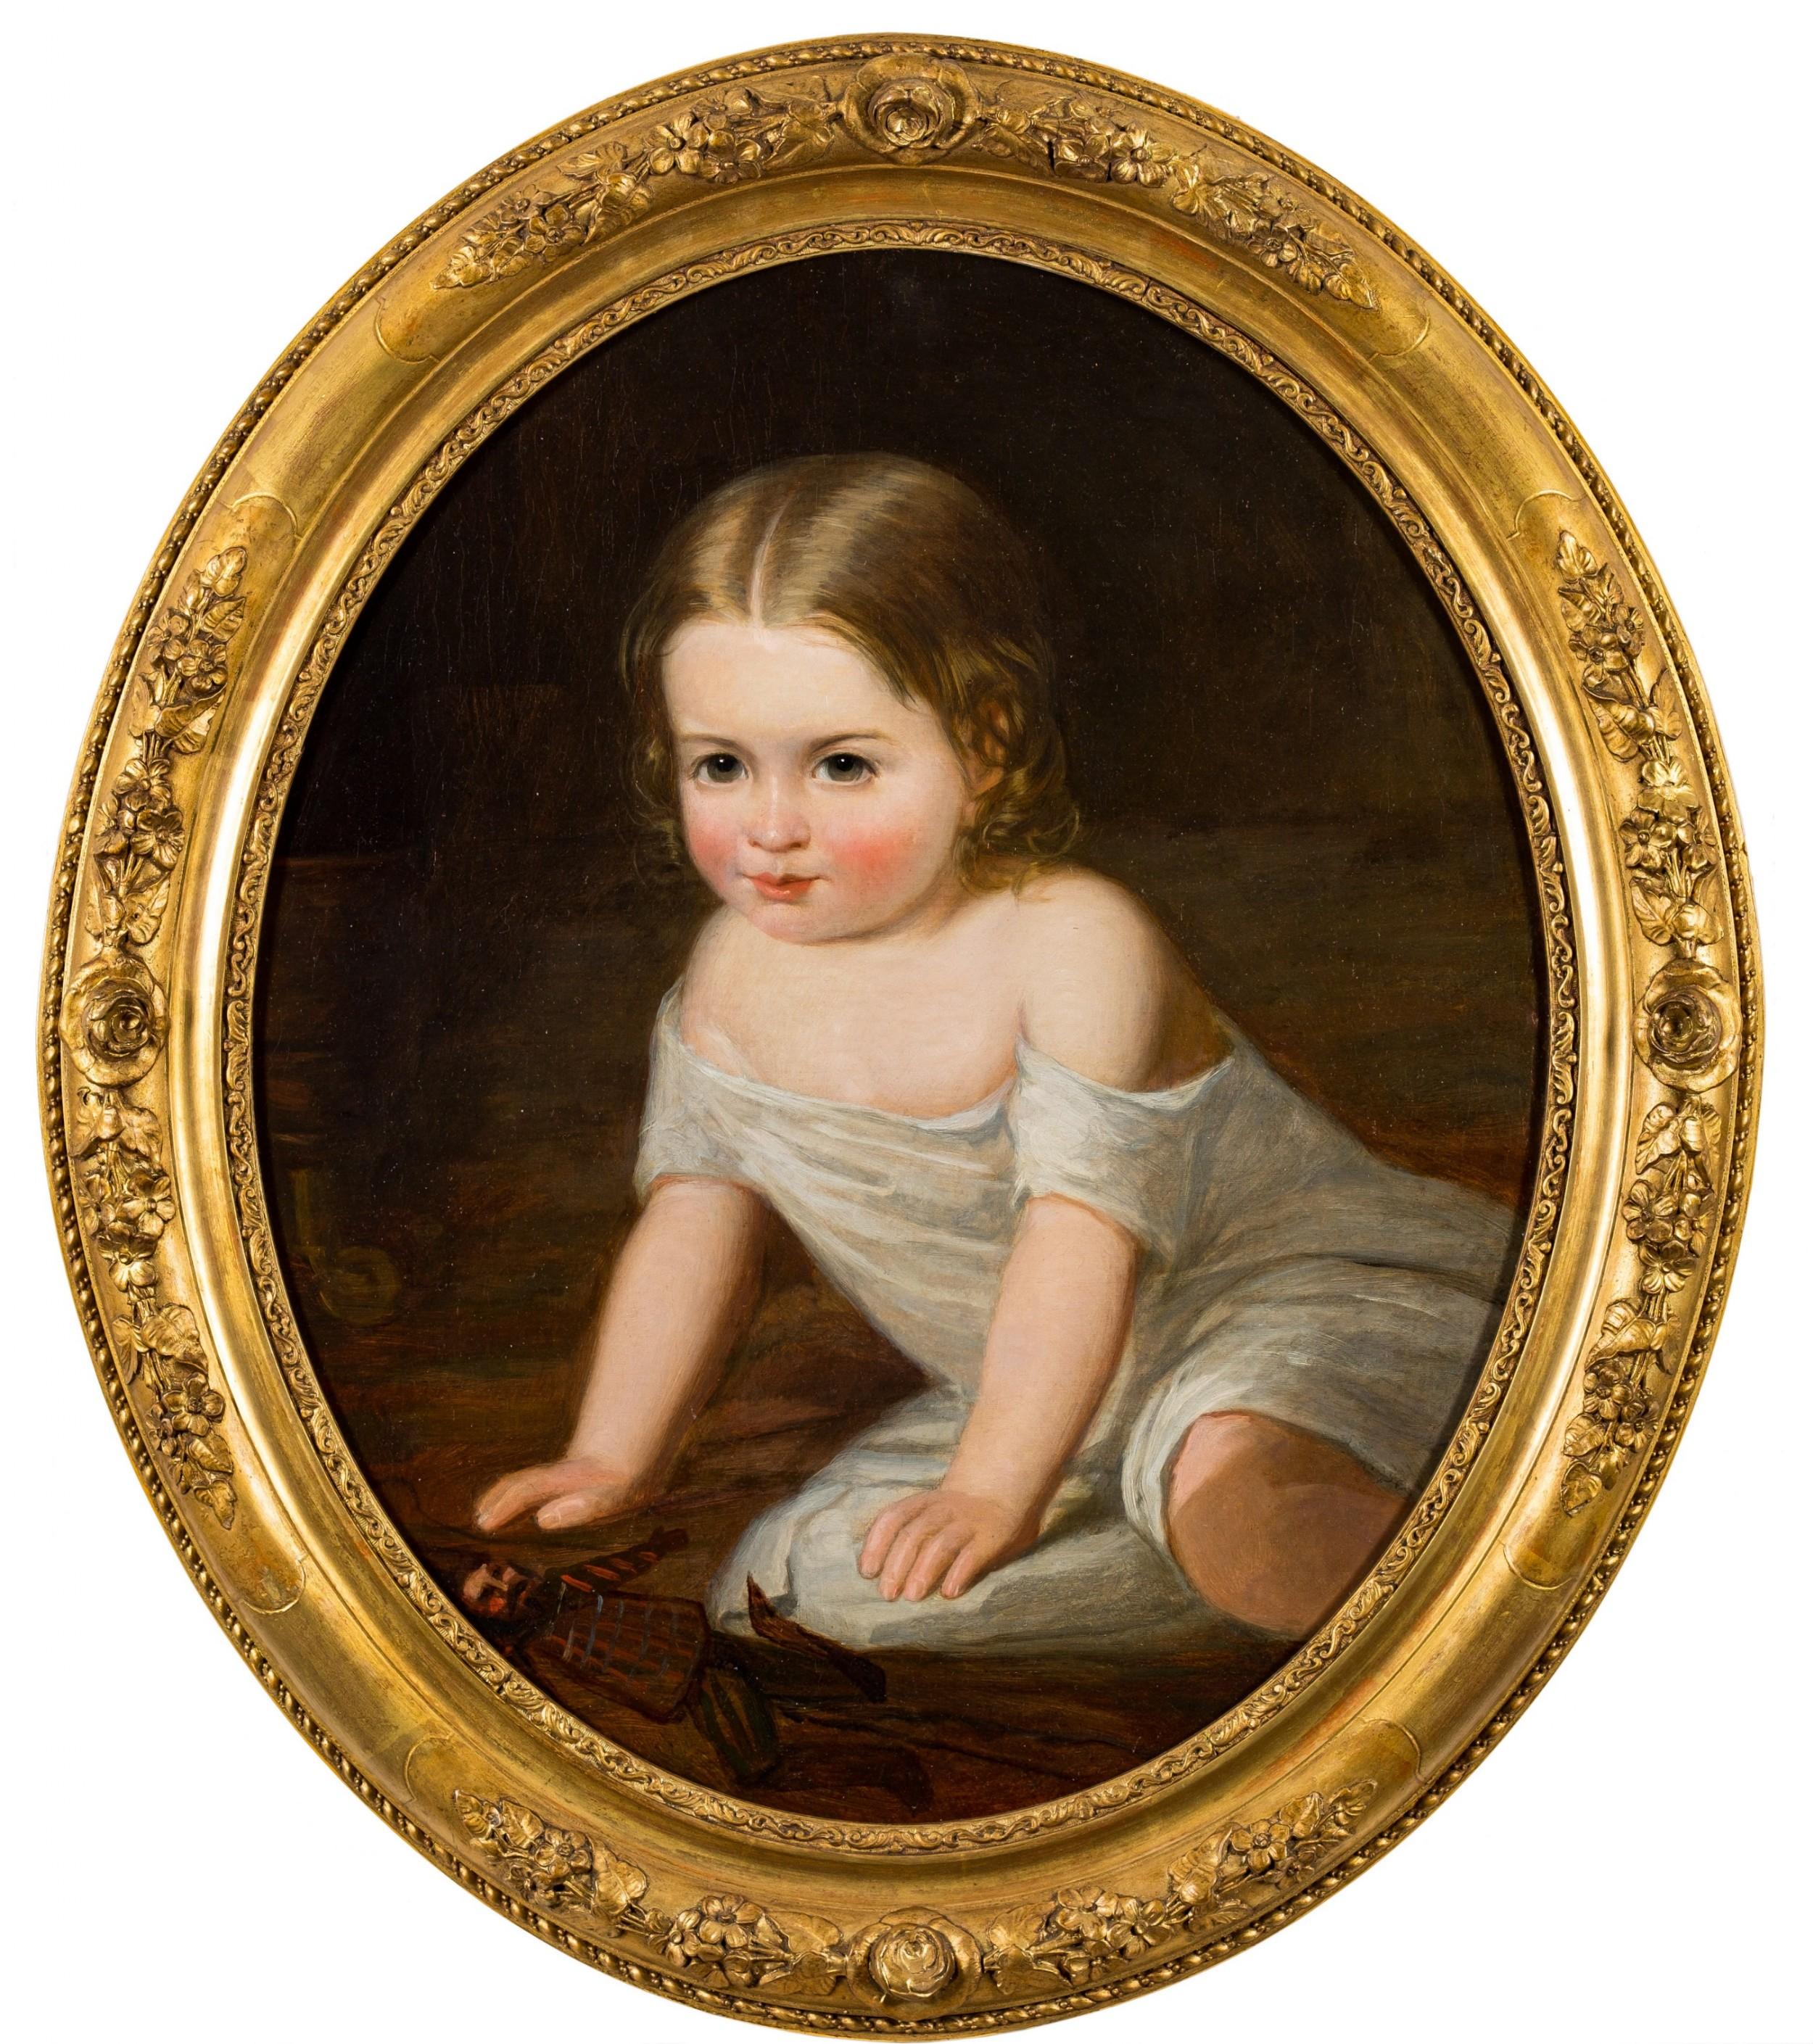 porträt aus dem 19. Jahrhundert, Kind beim Spielen ,zugeschrieben Henry Tanworth Wells
Ein schönes ovales Porträt eines kleinen Kindes beim Spielen, das dem Porträtmaler Henry Tanworth Wells zugeschrieben wird.
dieses fein ausgeführte Öl auf